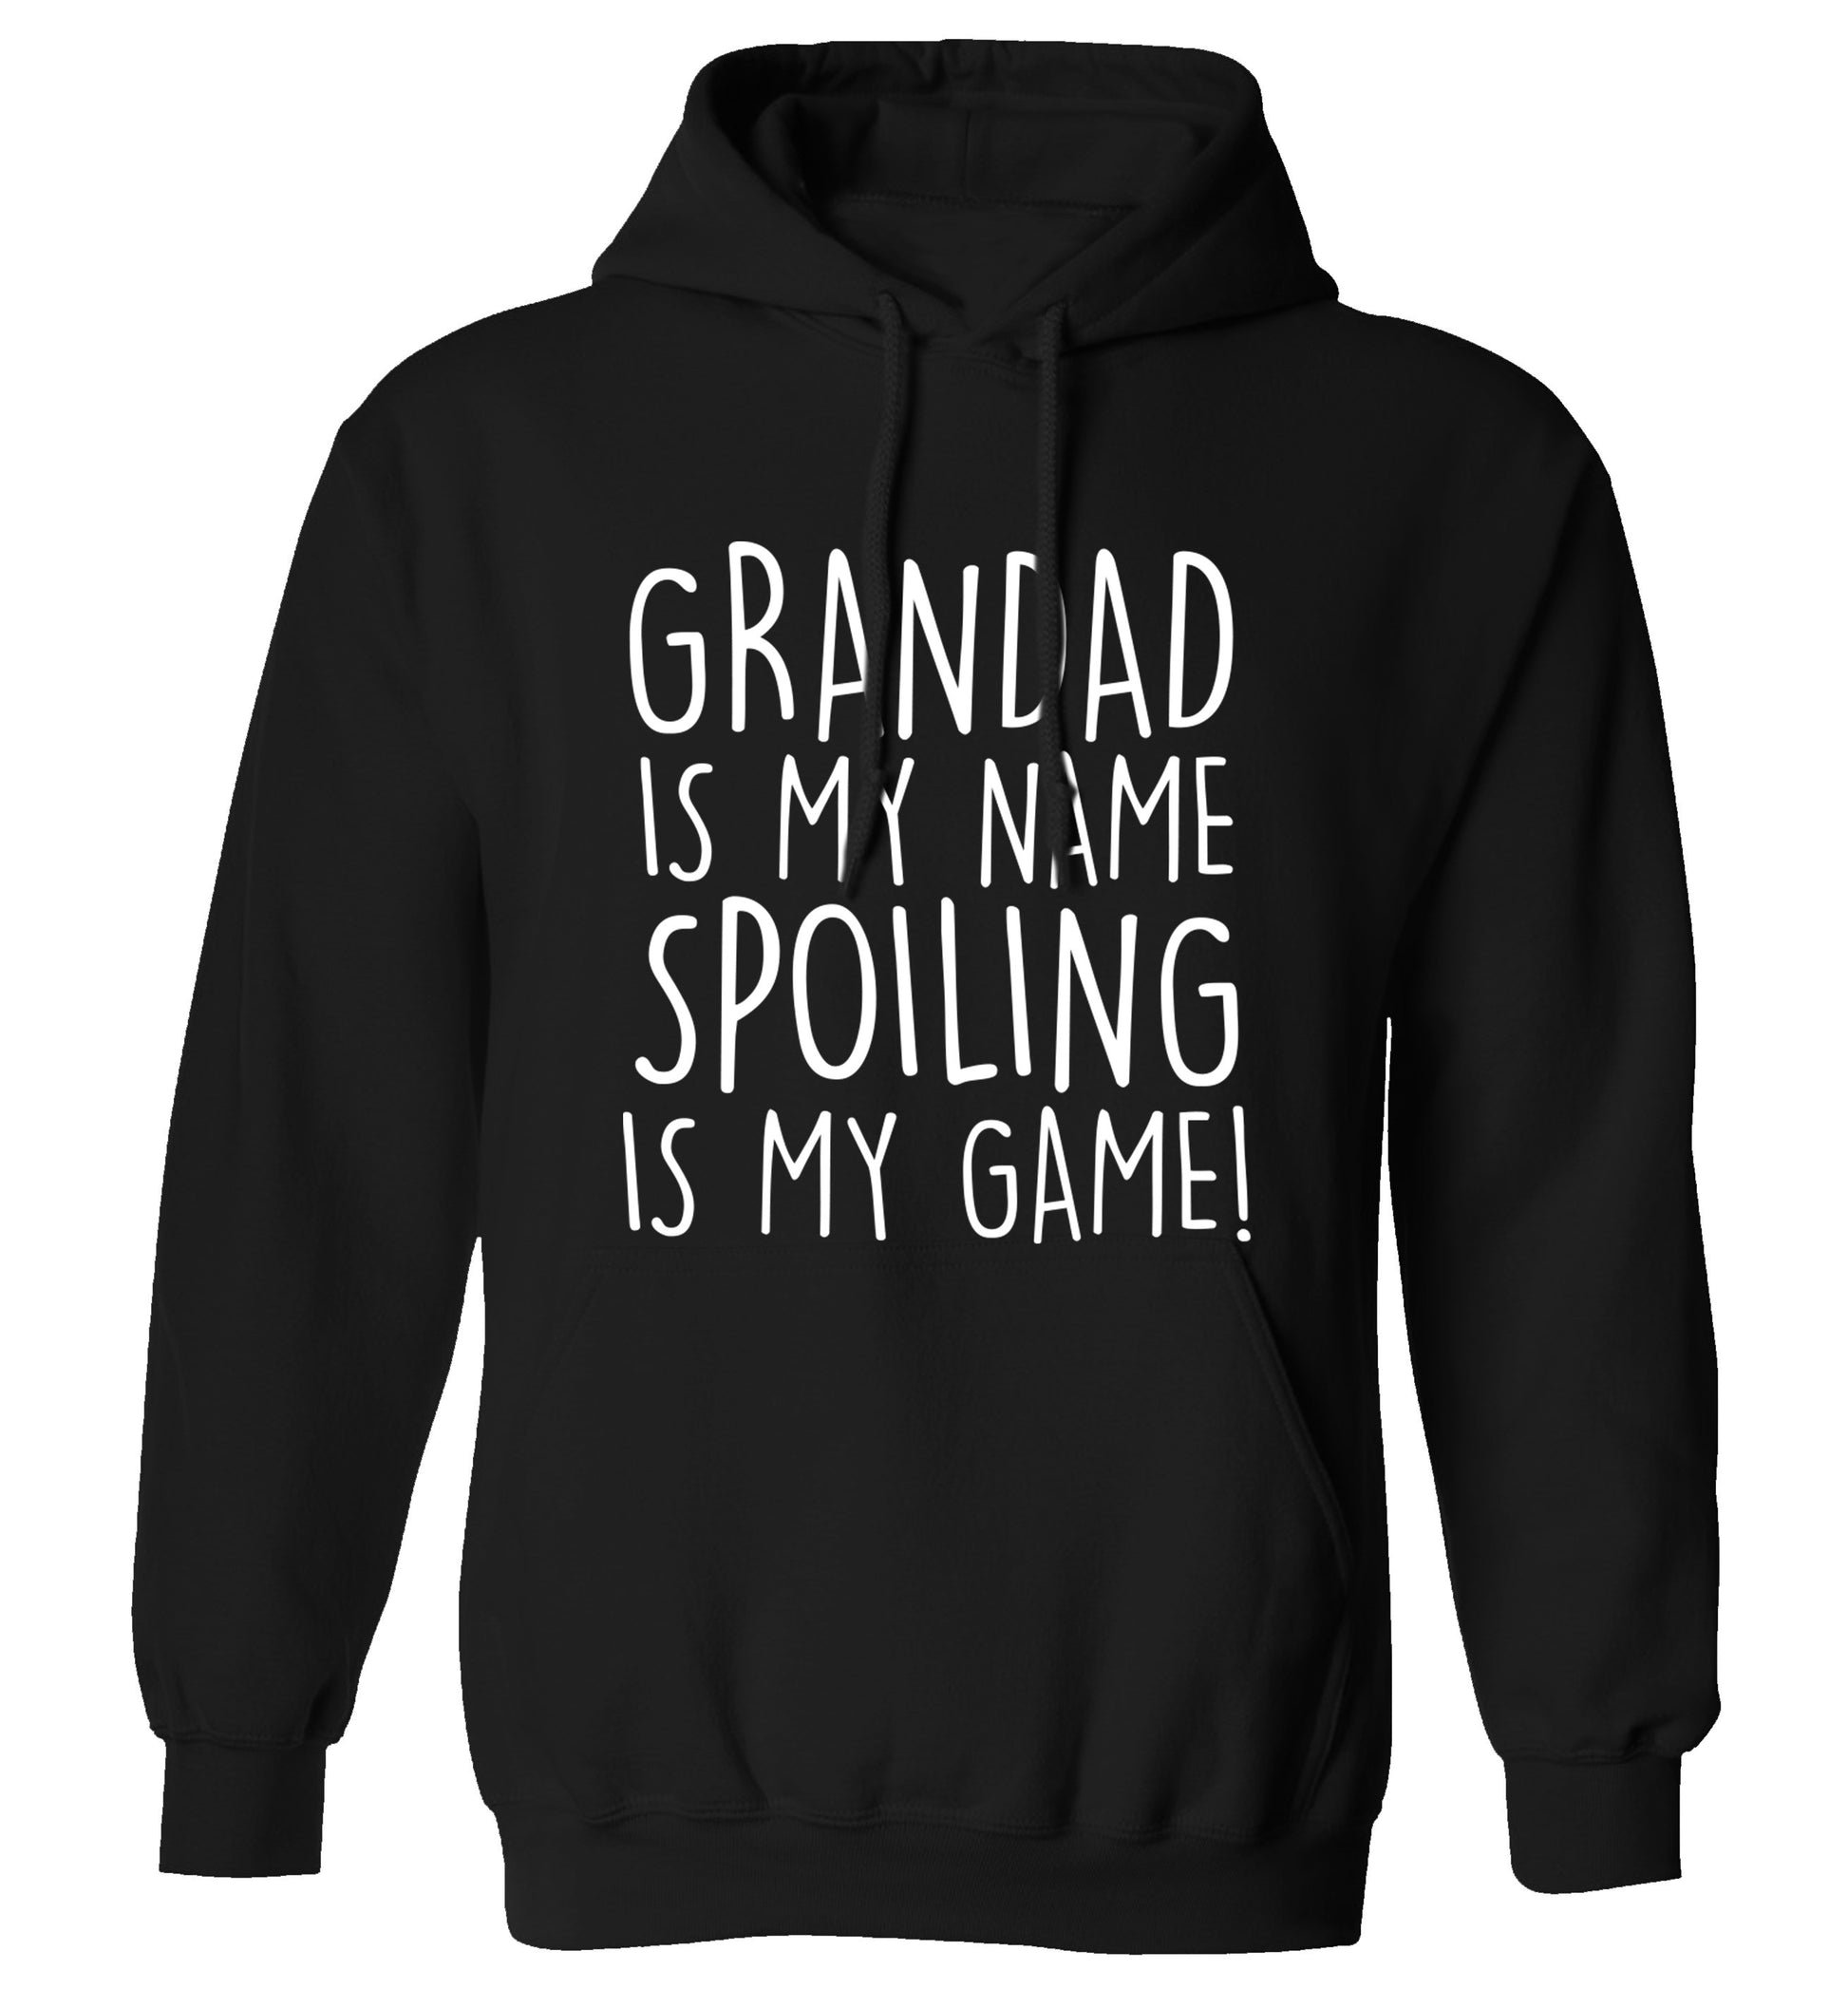 Grandad is my name, spoiling is my game adults unisex black hoodie 2XL